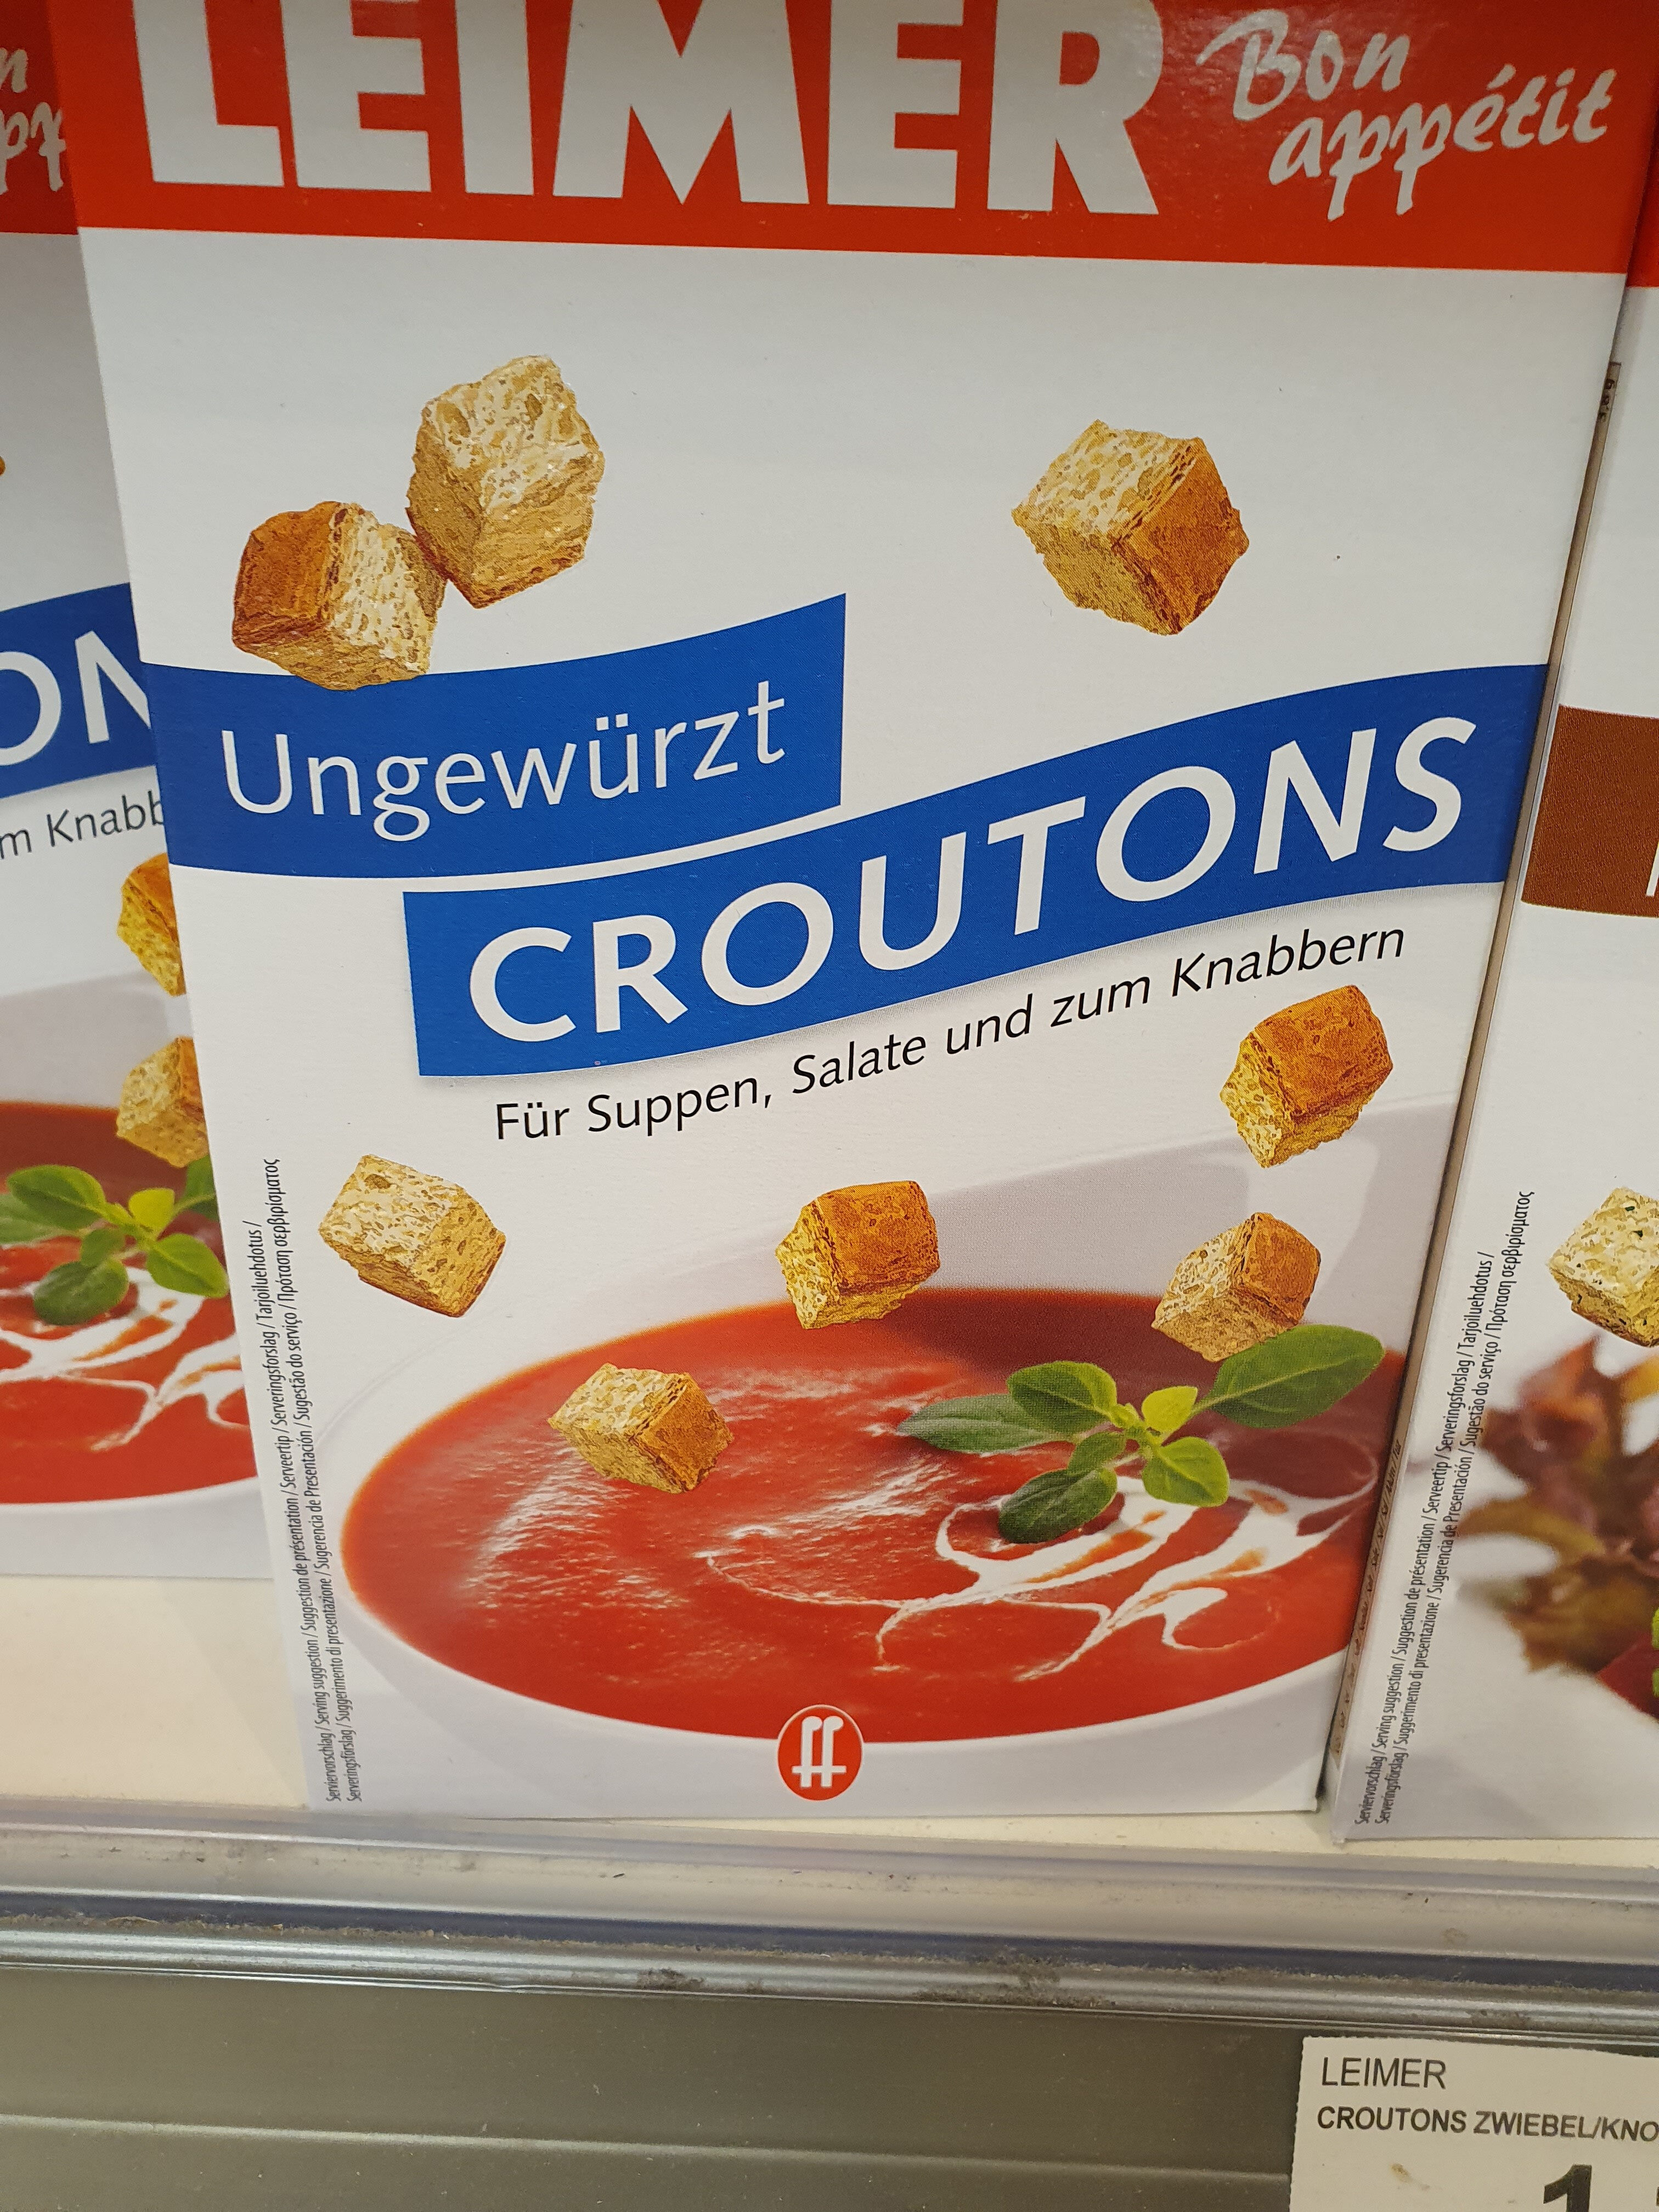 Croutons ungewürzt - Product - de